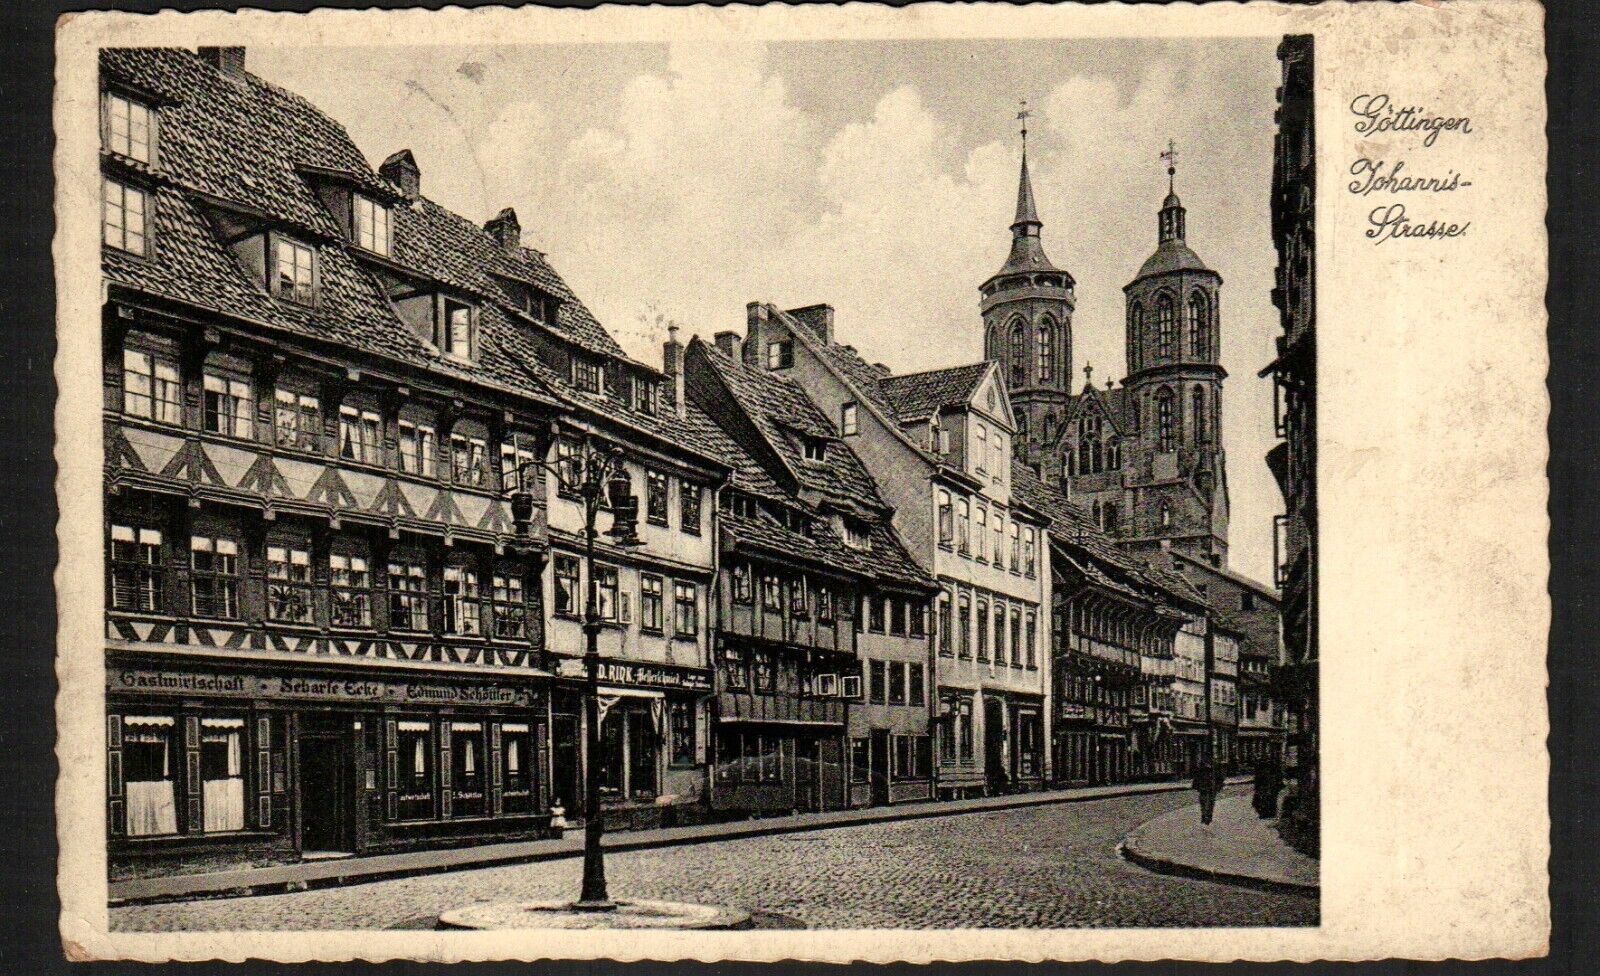 Old Postcard 1934 Gottingen Johannis Strasse Switzerland Street View 1934